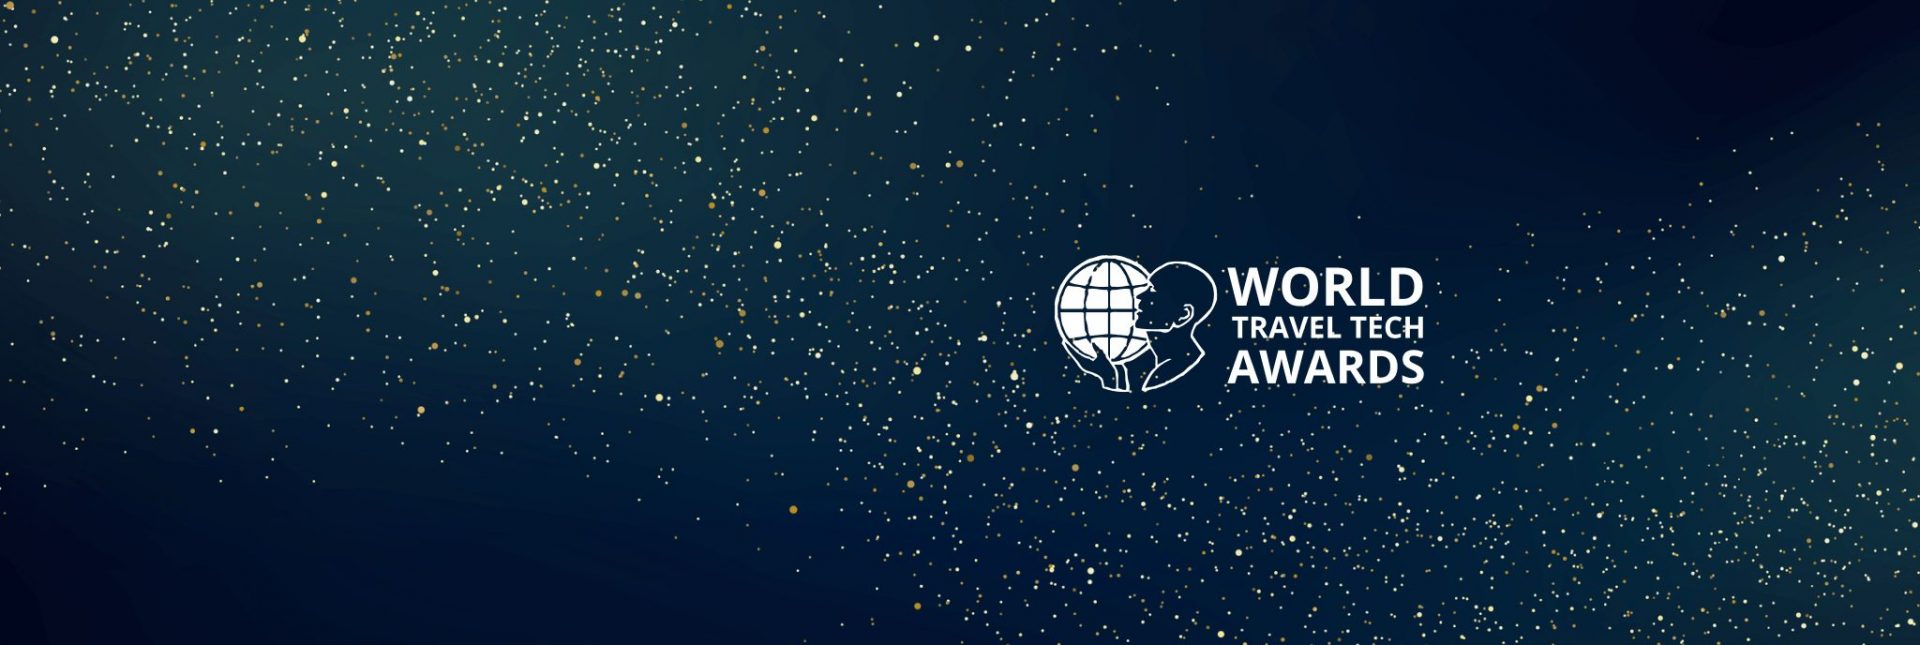 World Travel Tech Awards News Banner